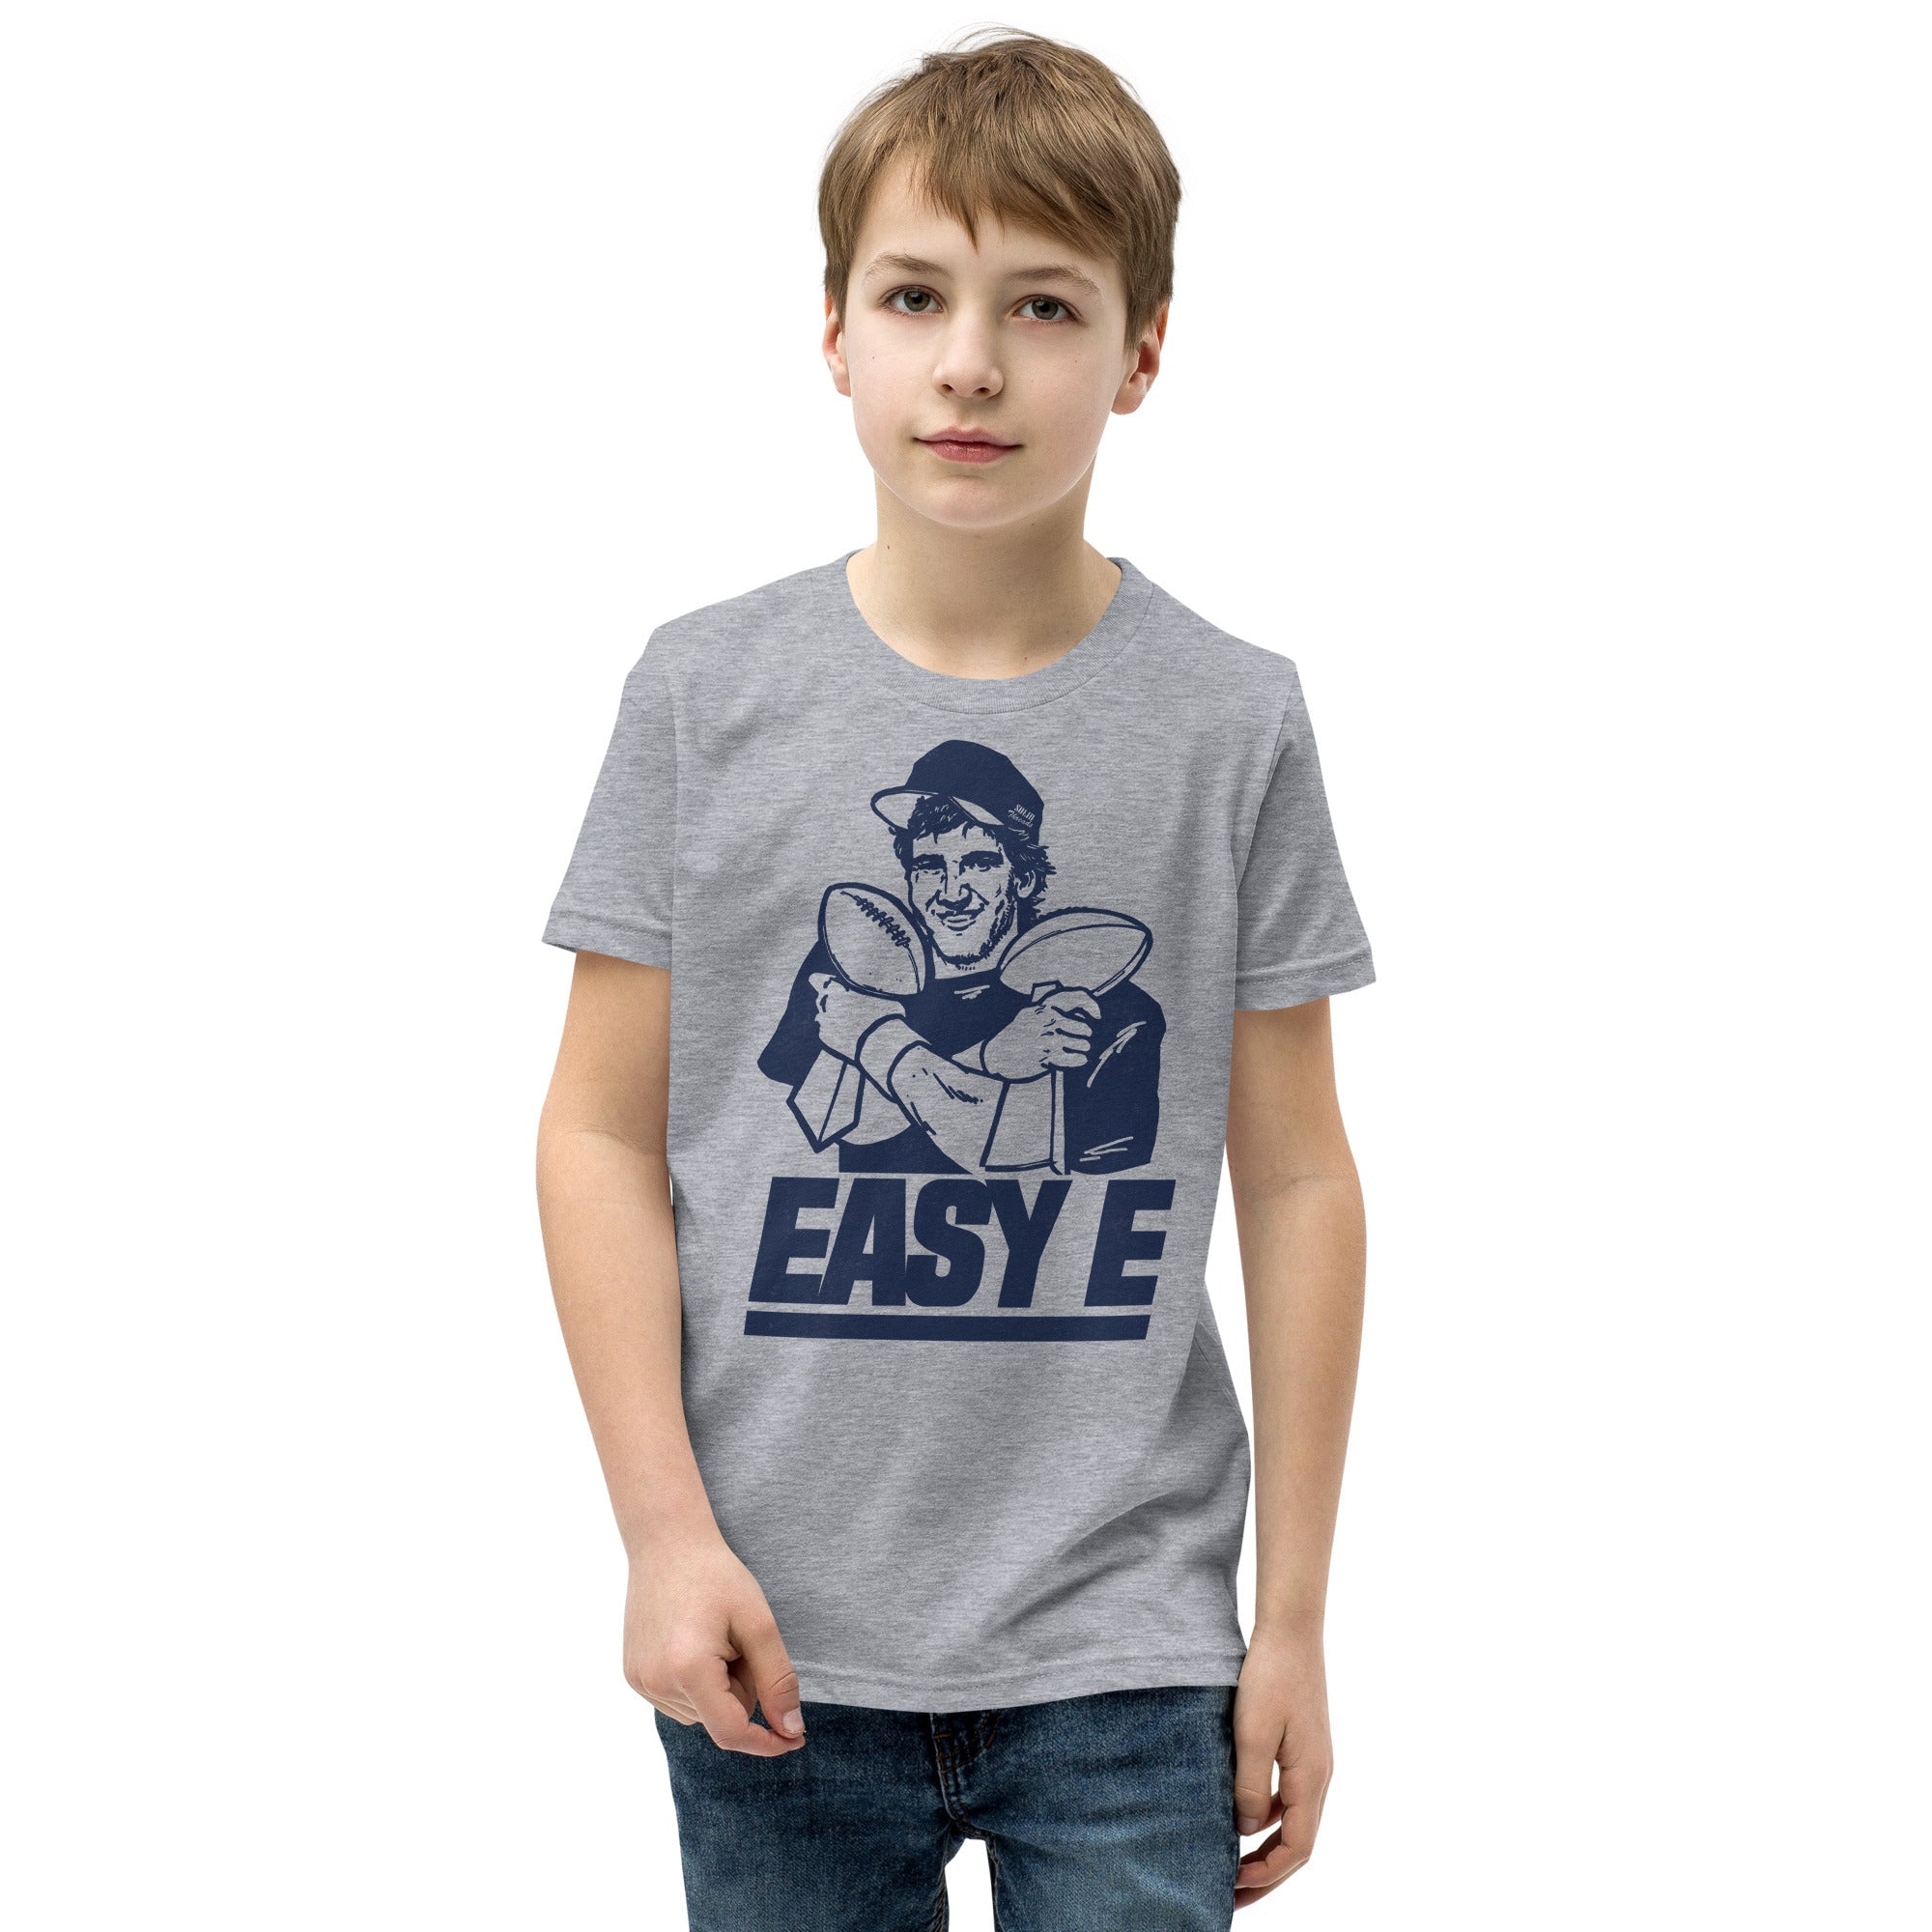 Youth Easy E Retro Football Extra Soft T-Shirt | Funny NY Giants Kids Tee Boy Model | Solid Threads